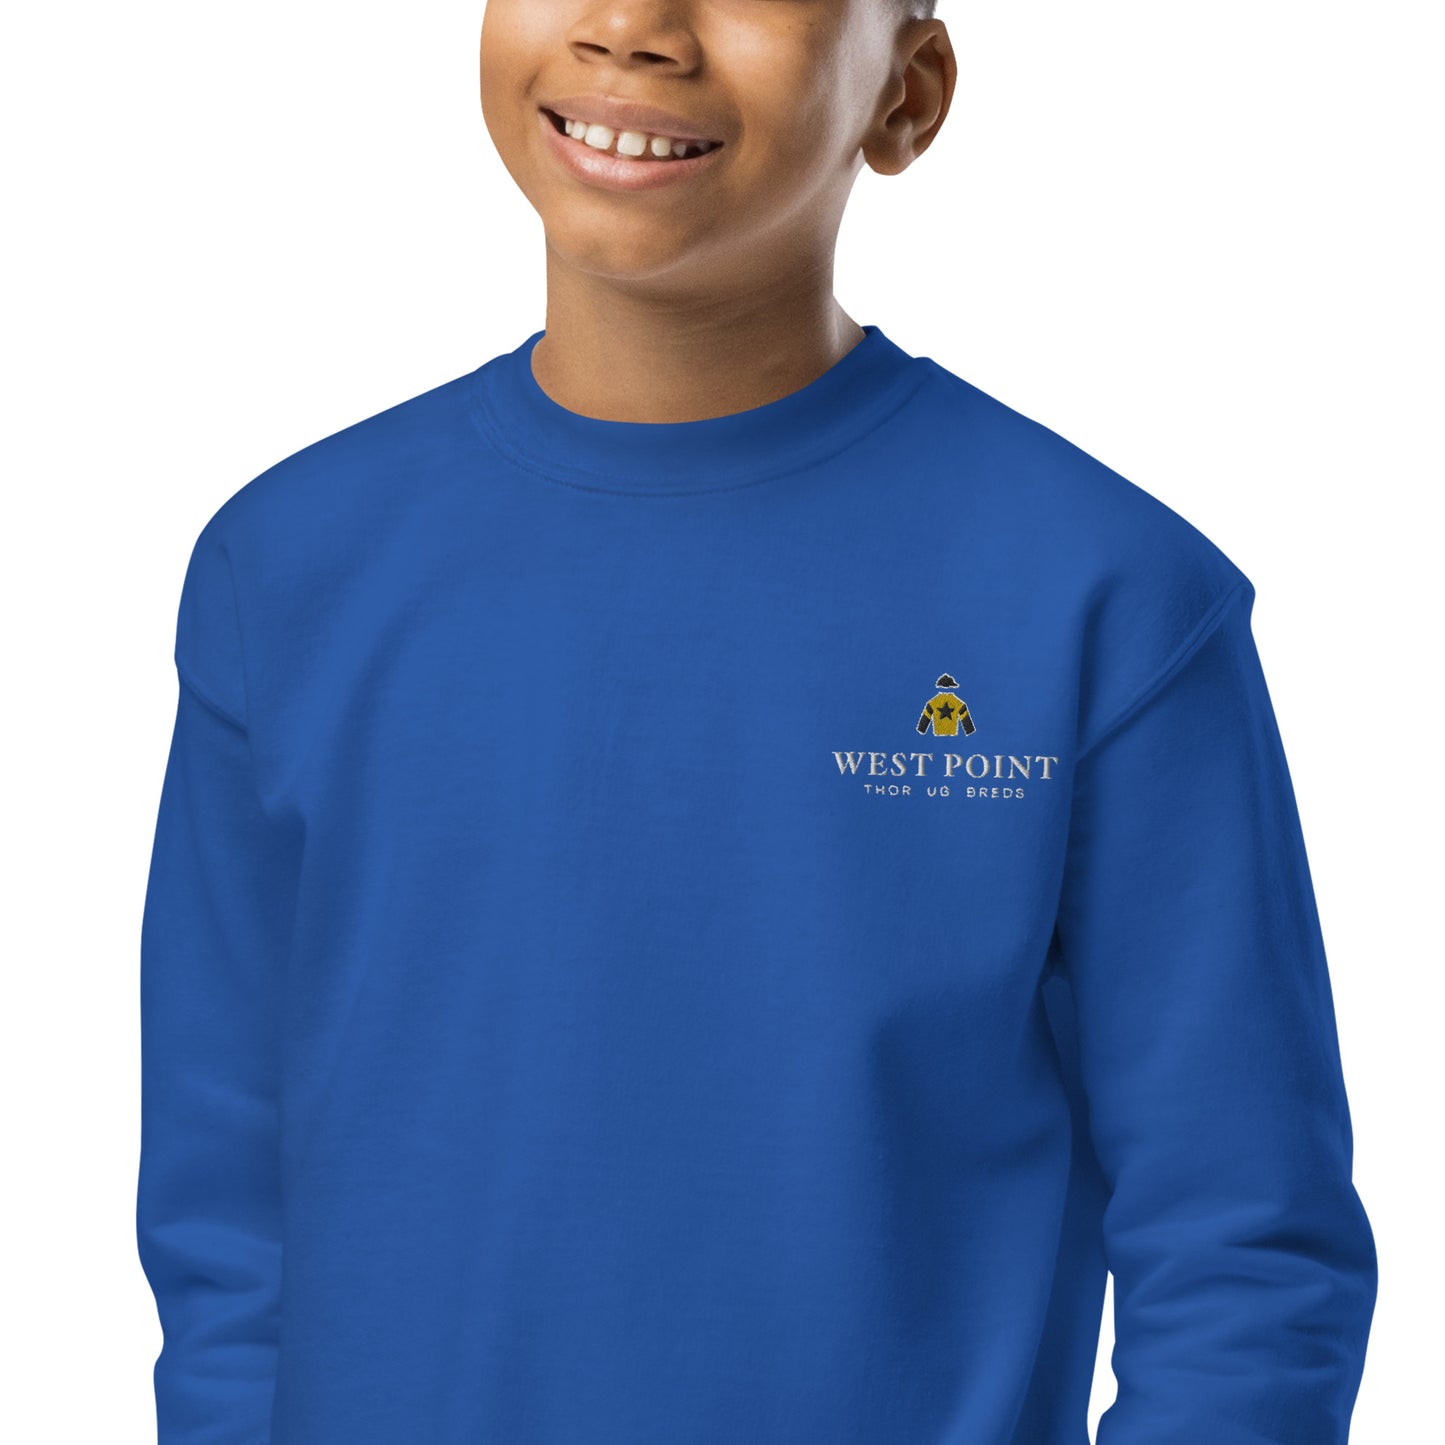 Kids West Point Crewneck Sweatshirt